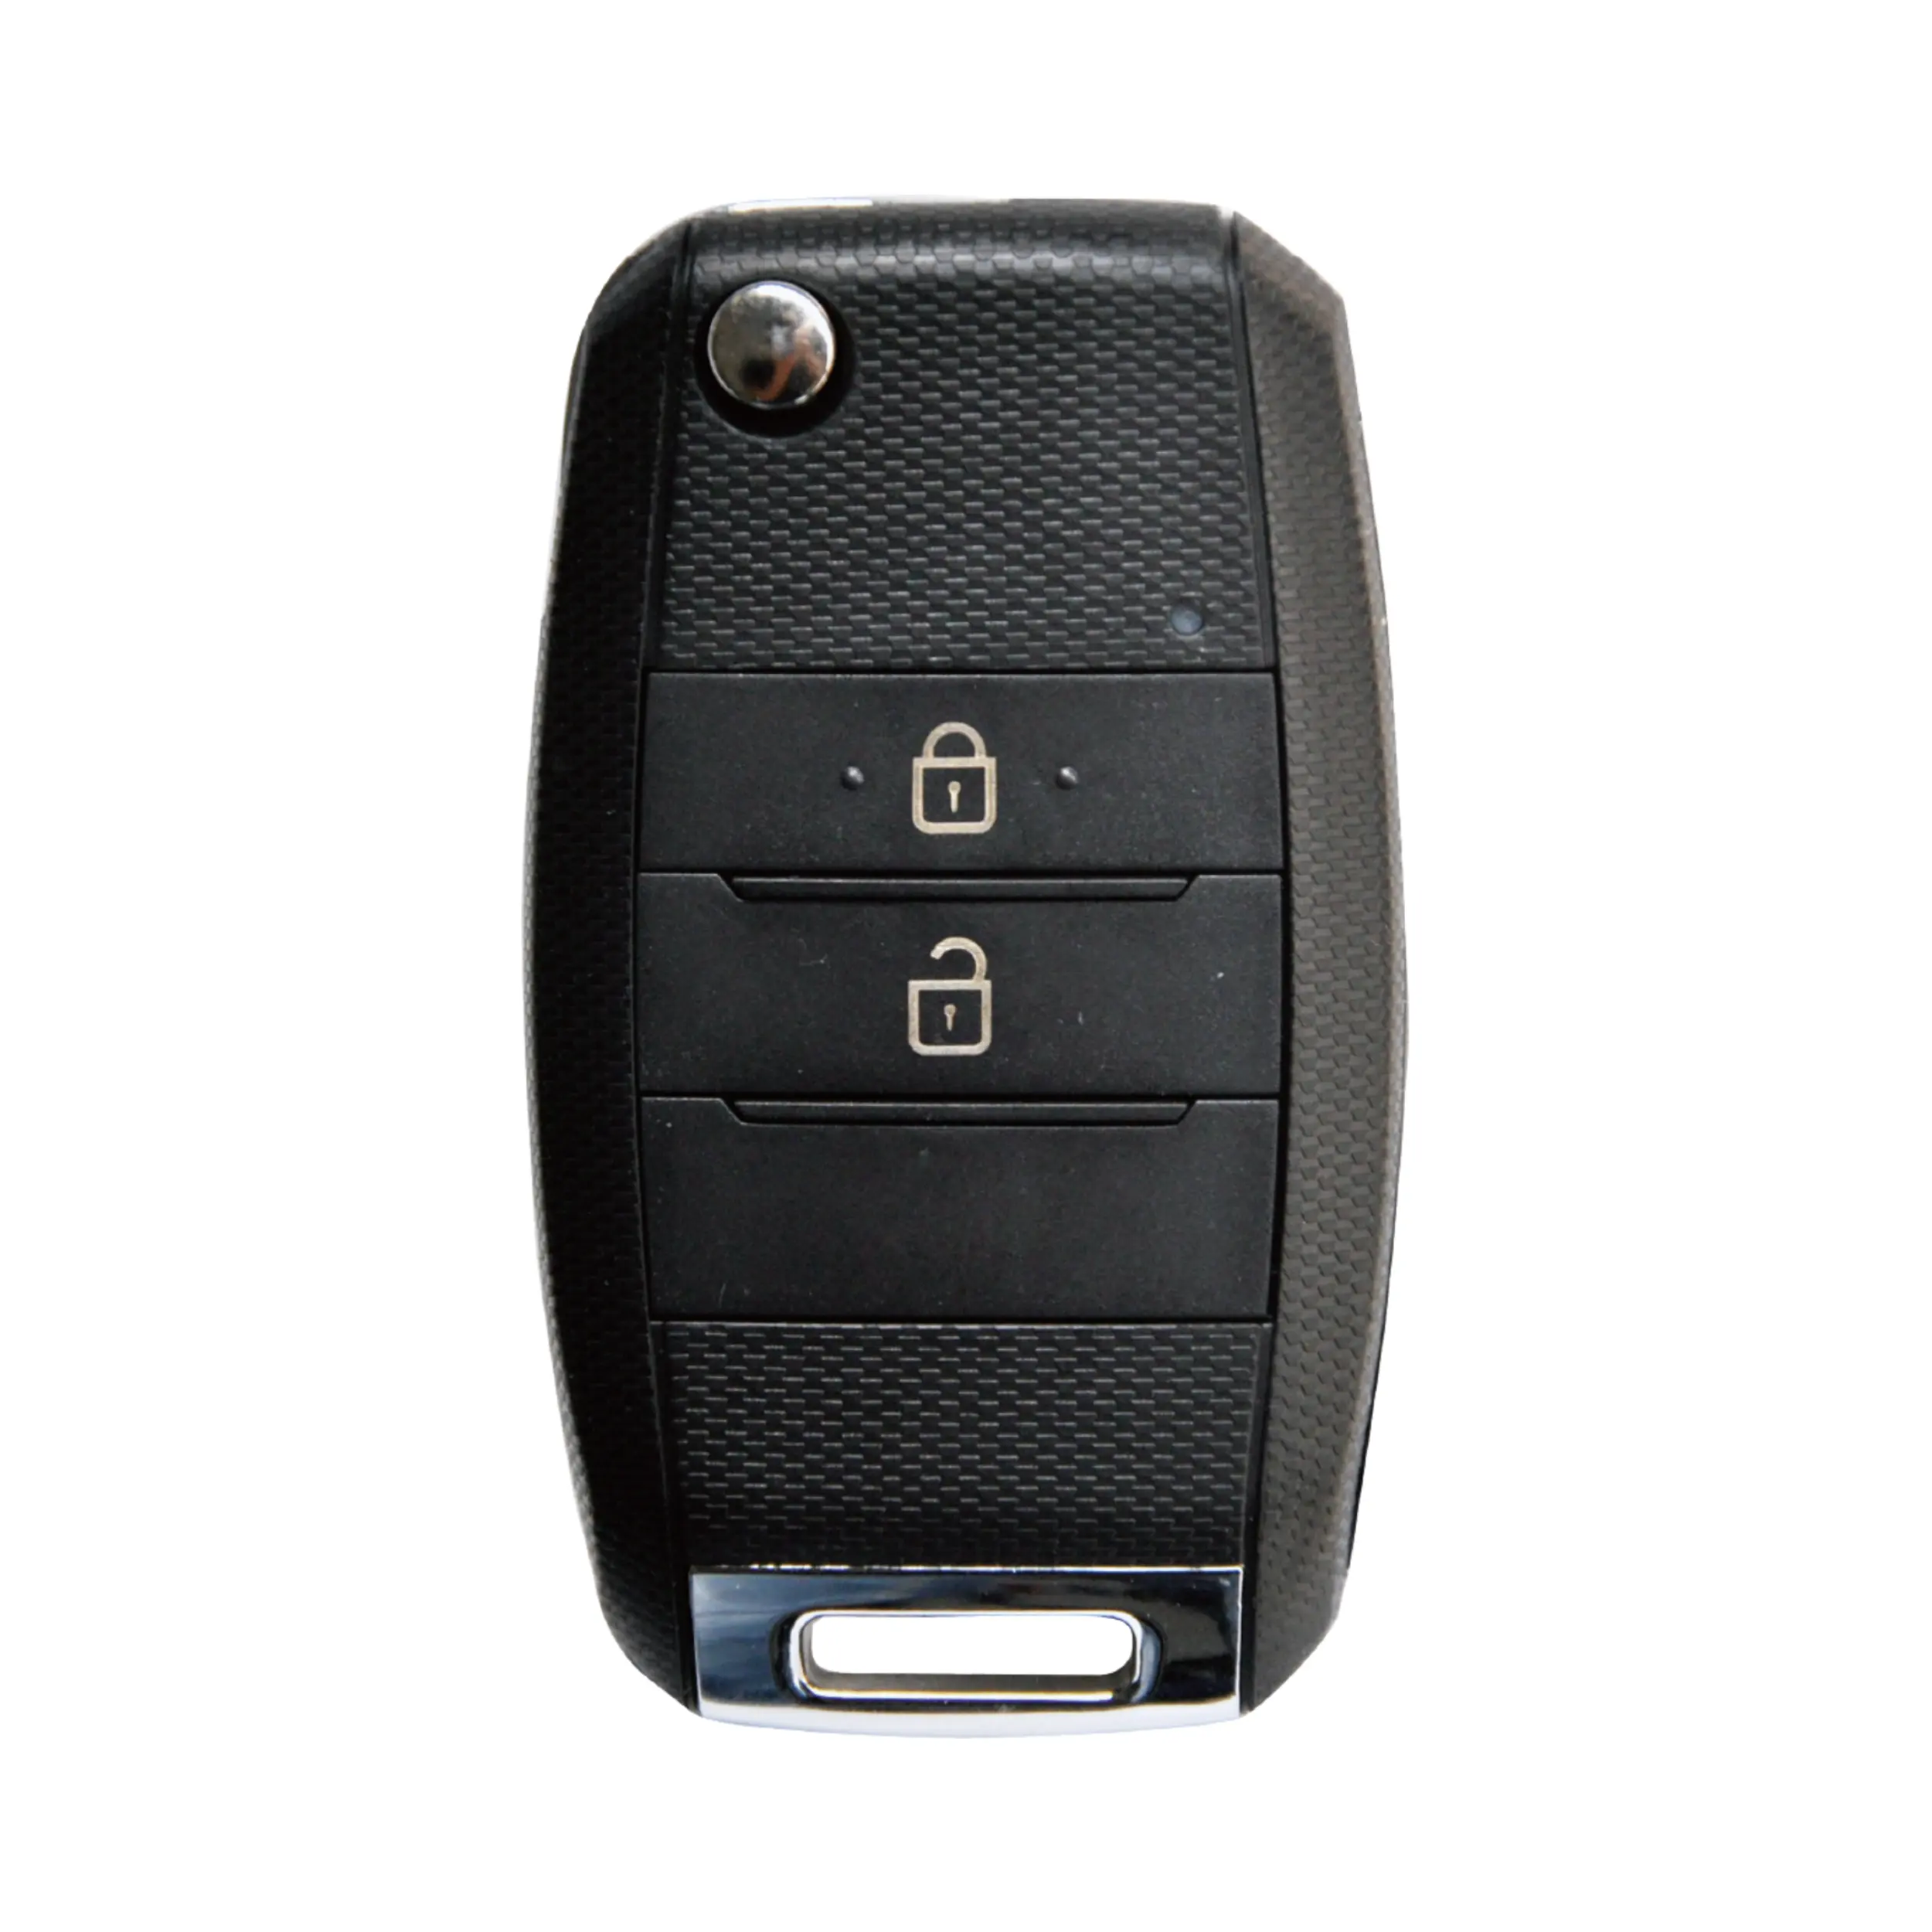 KEYDIY Universal KD Remote B19-2 For KD-X2 KD900 Mini KD Car Key Control Remoto Controle Replacement Wholesale